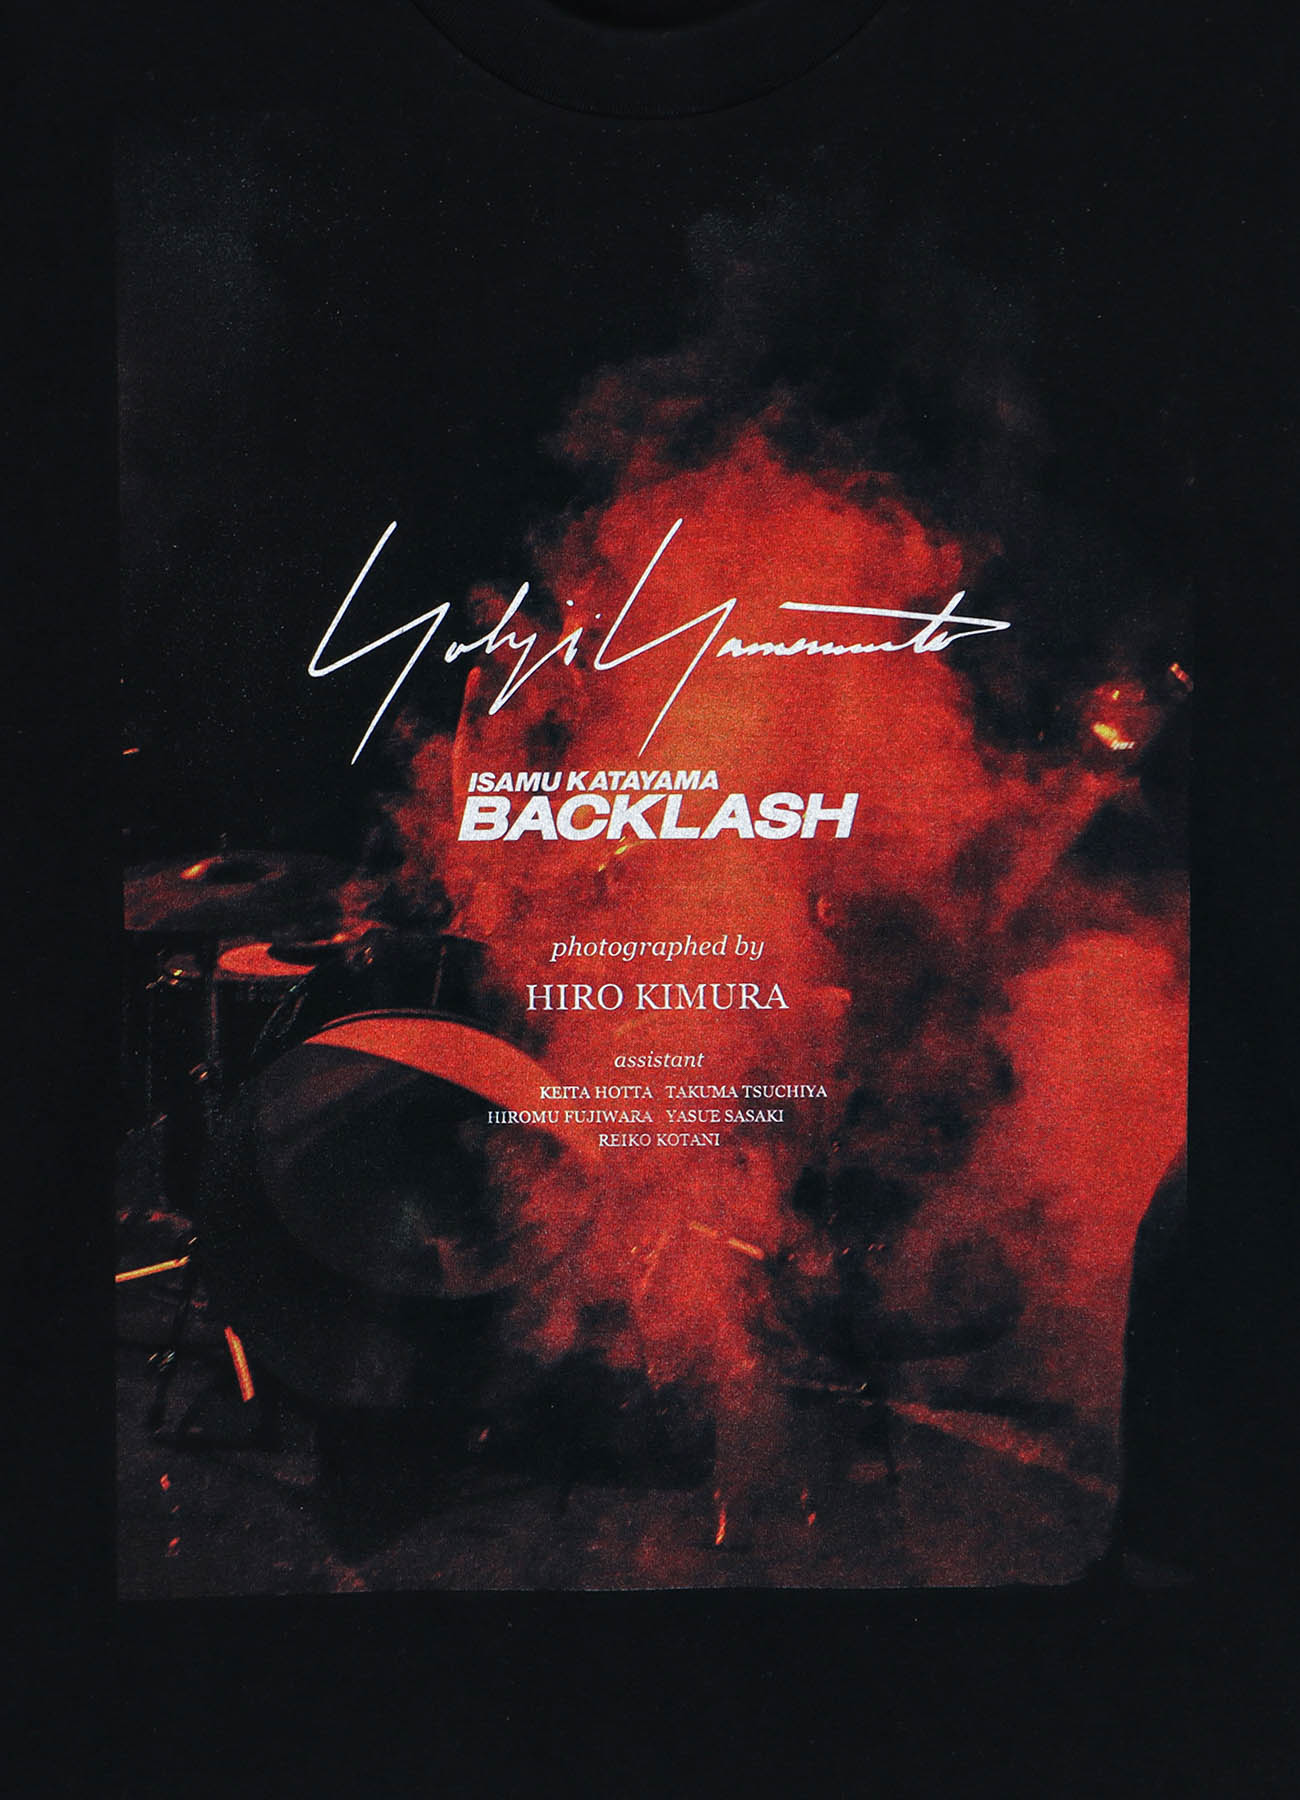 【7/23 10:00 Release】Yohji Yamamoto X BACKLASH PHOTOGRAPH T-SHIRT